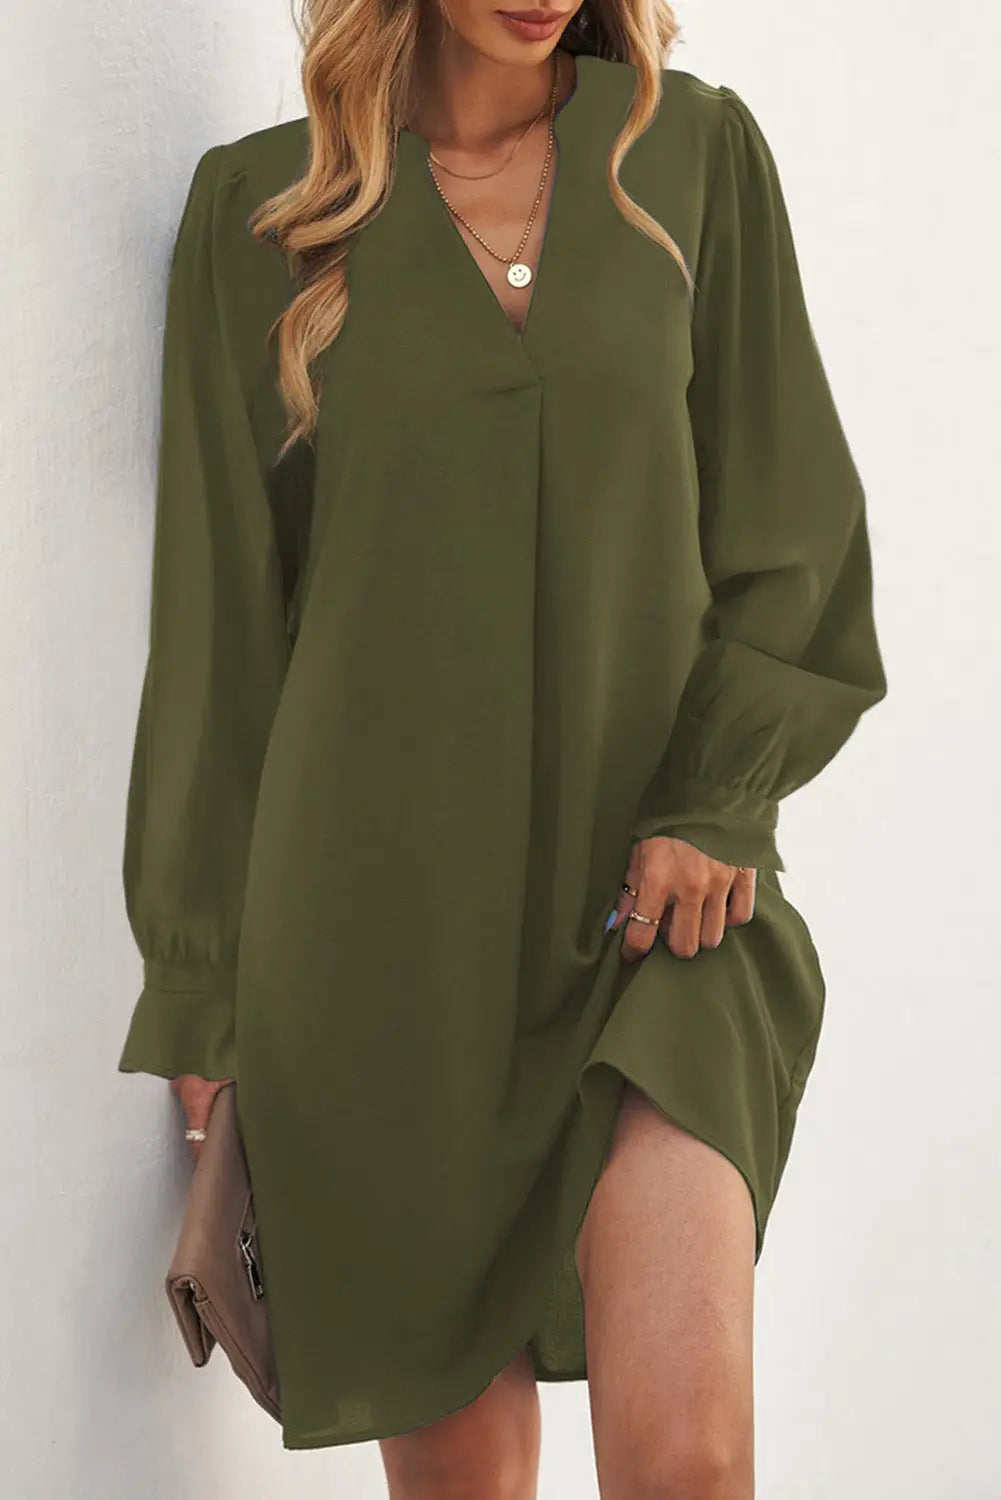 Shirt dress - green split v neck ruffled sleeves - s / 100% polyester - mini dresses